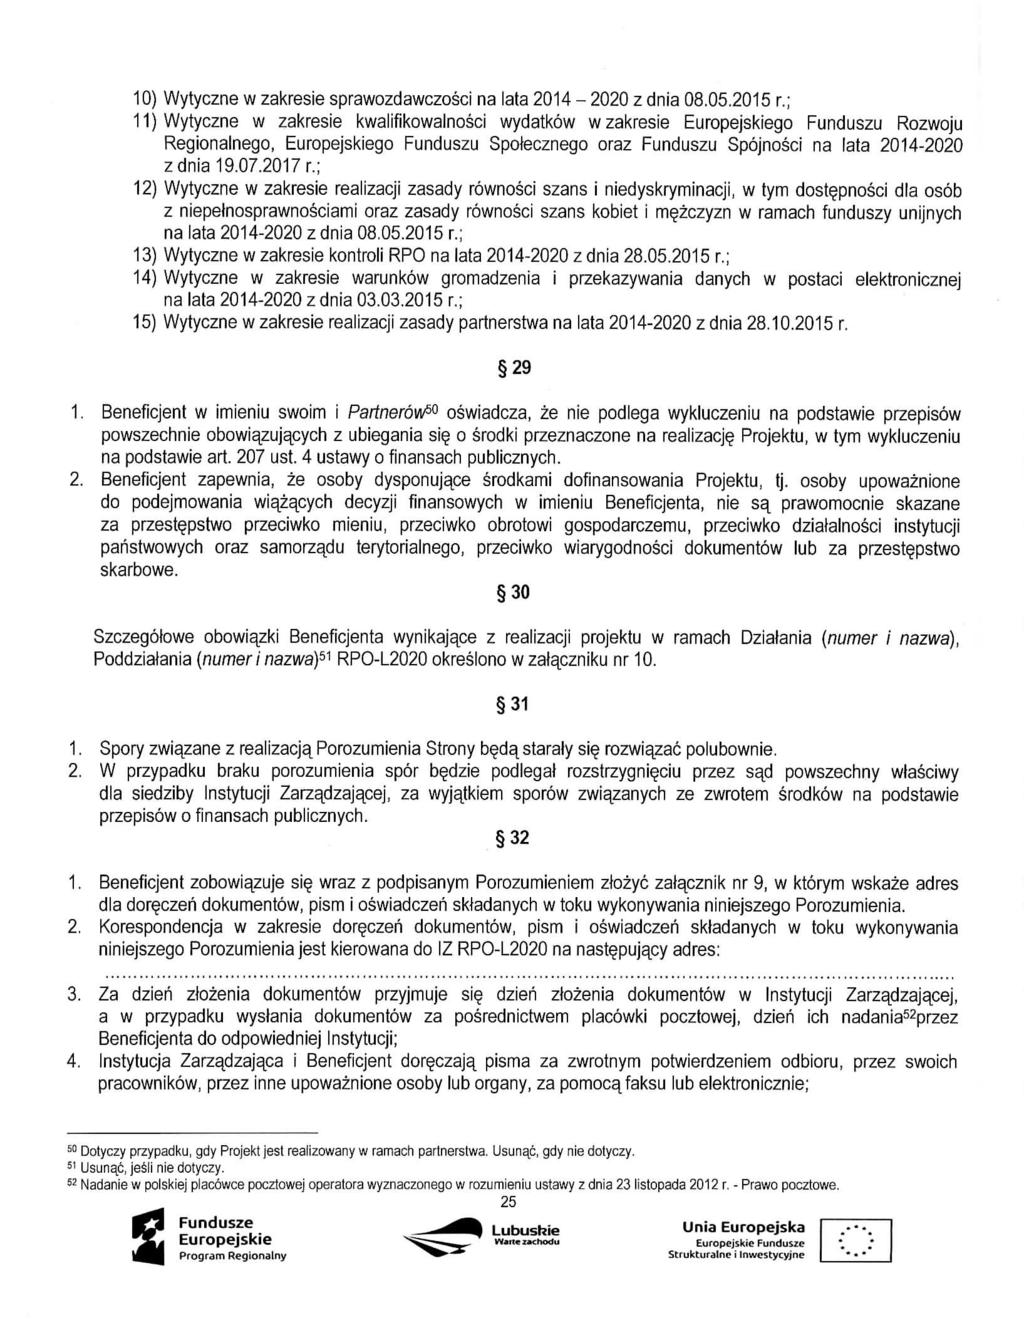 10) Wytyczne w zakresie sprawozdawczosci na lata 2014-2020 zdnia 08.05.2015 r.